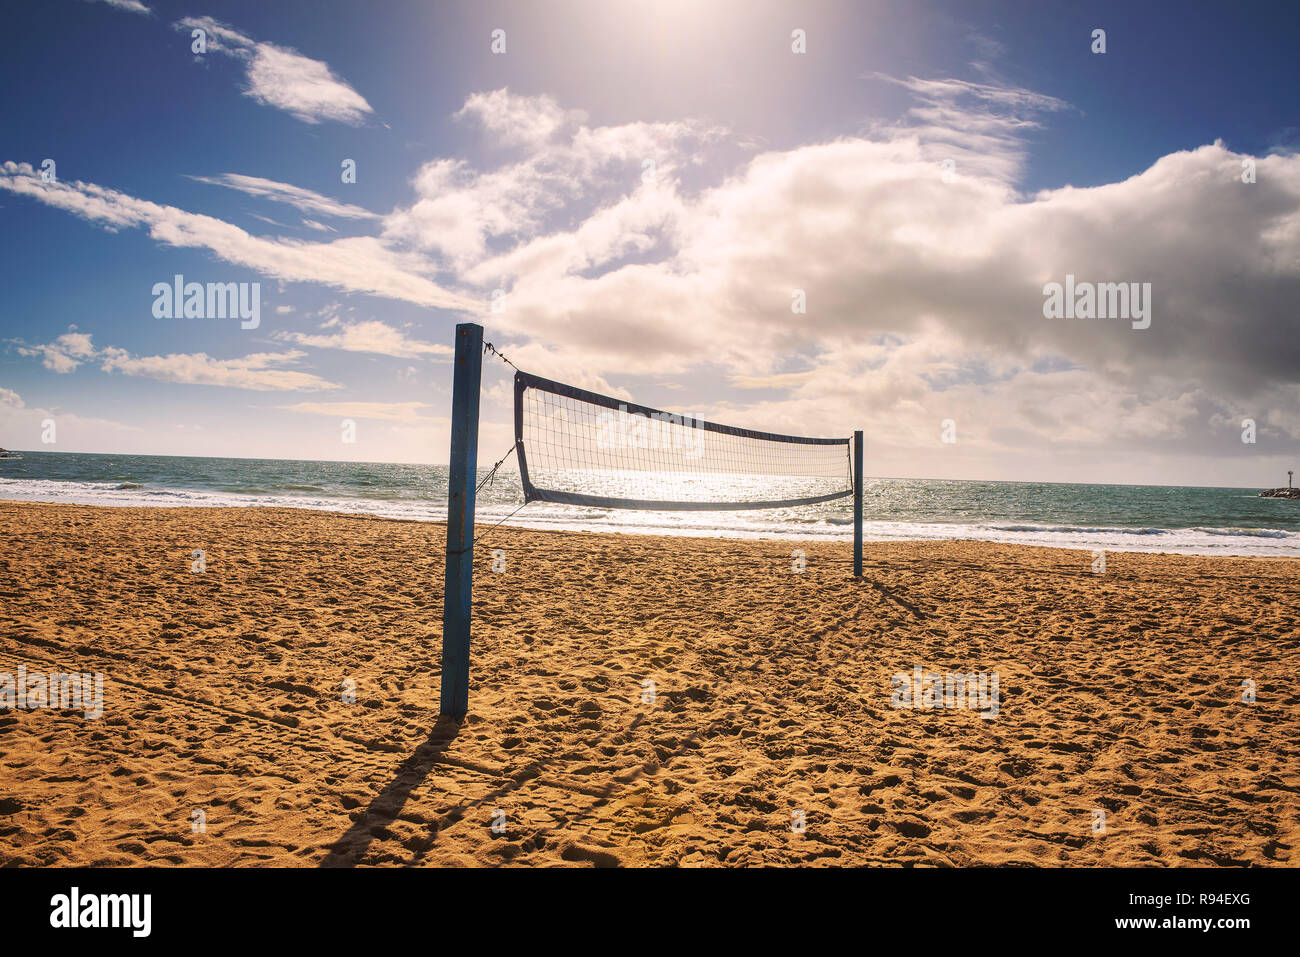 Red de voleibol de playa en la Playa Estatal de Corona del Mar, cerca de Los Angeles Foto de stock